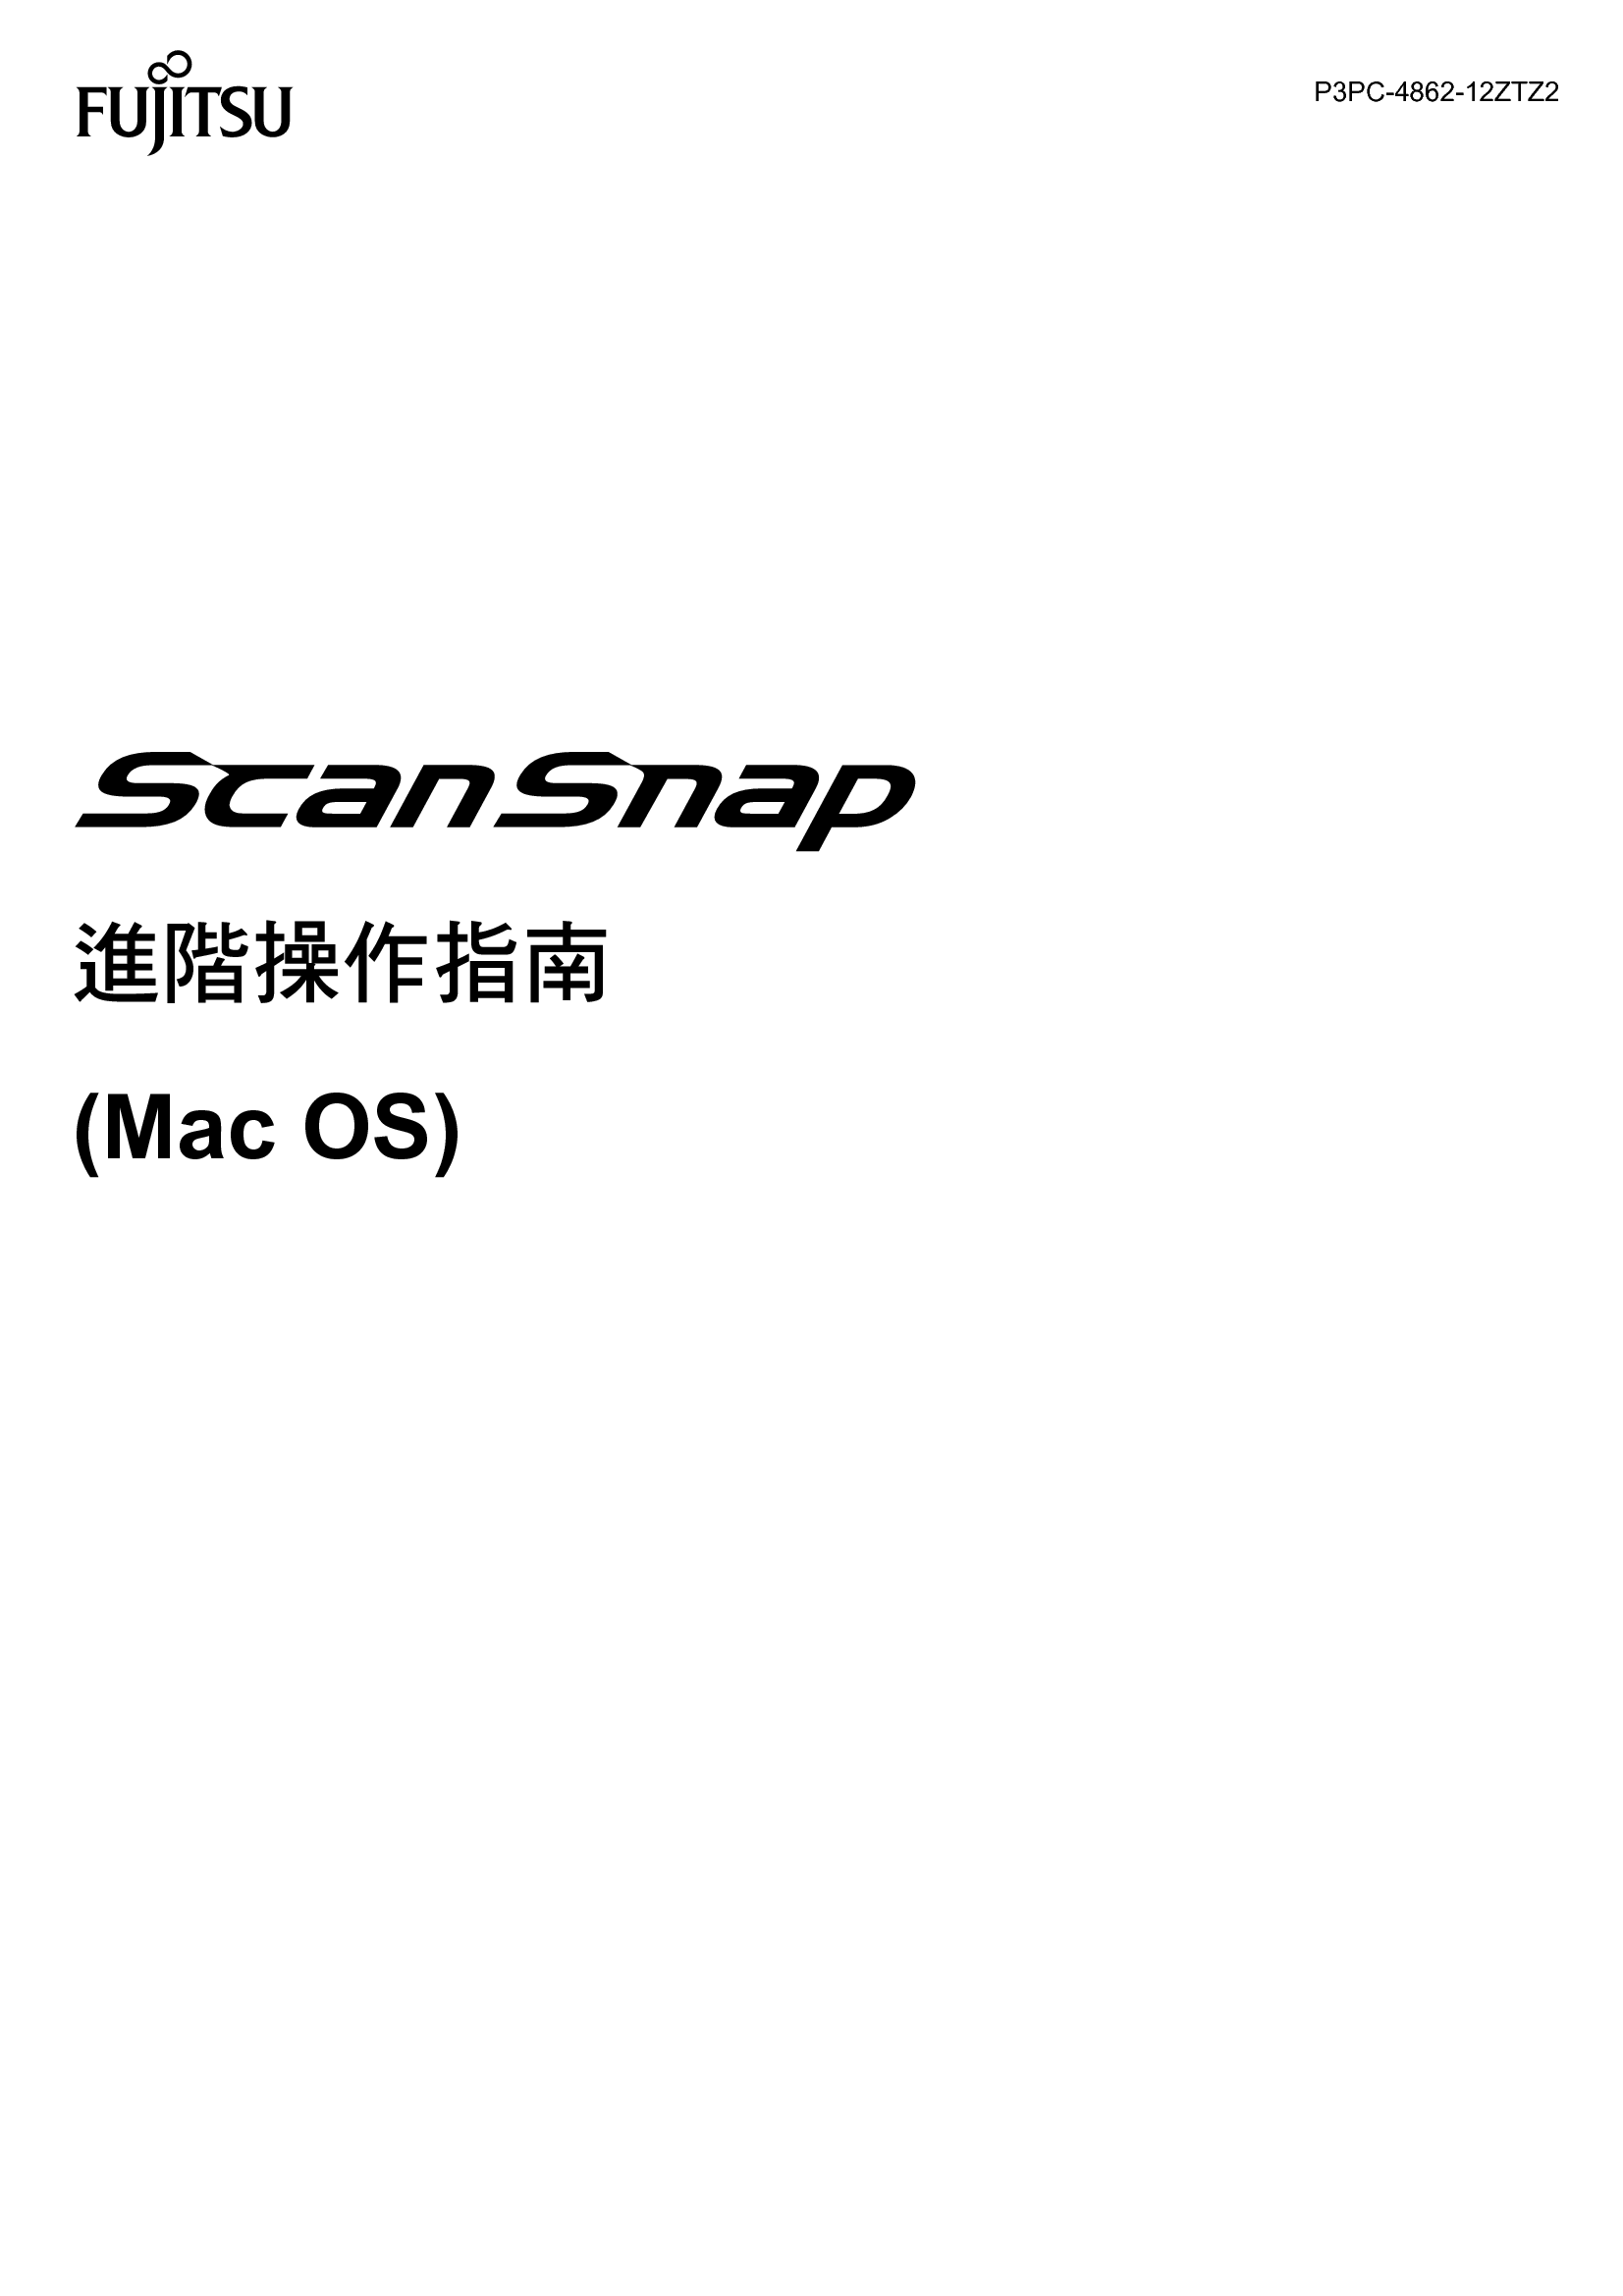 富士通 Fujitsu ScanSnap Mac OS 繁体 高级指南 封面